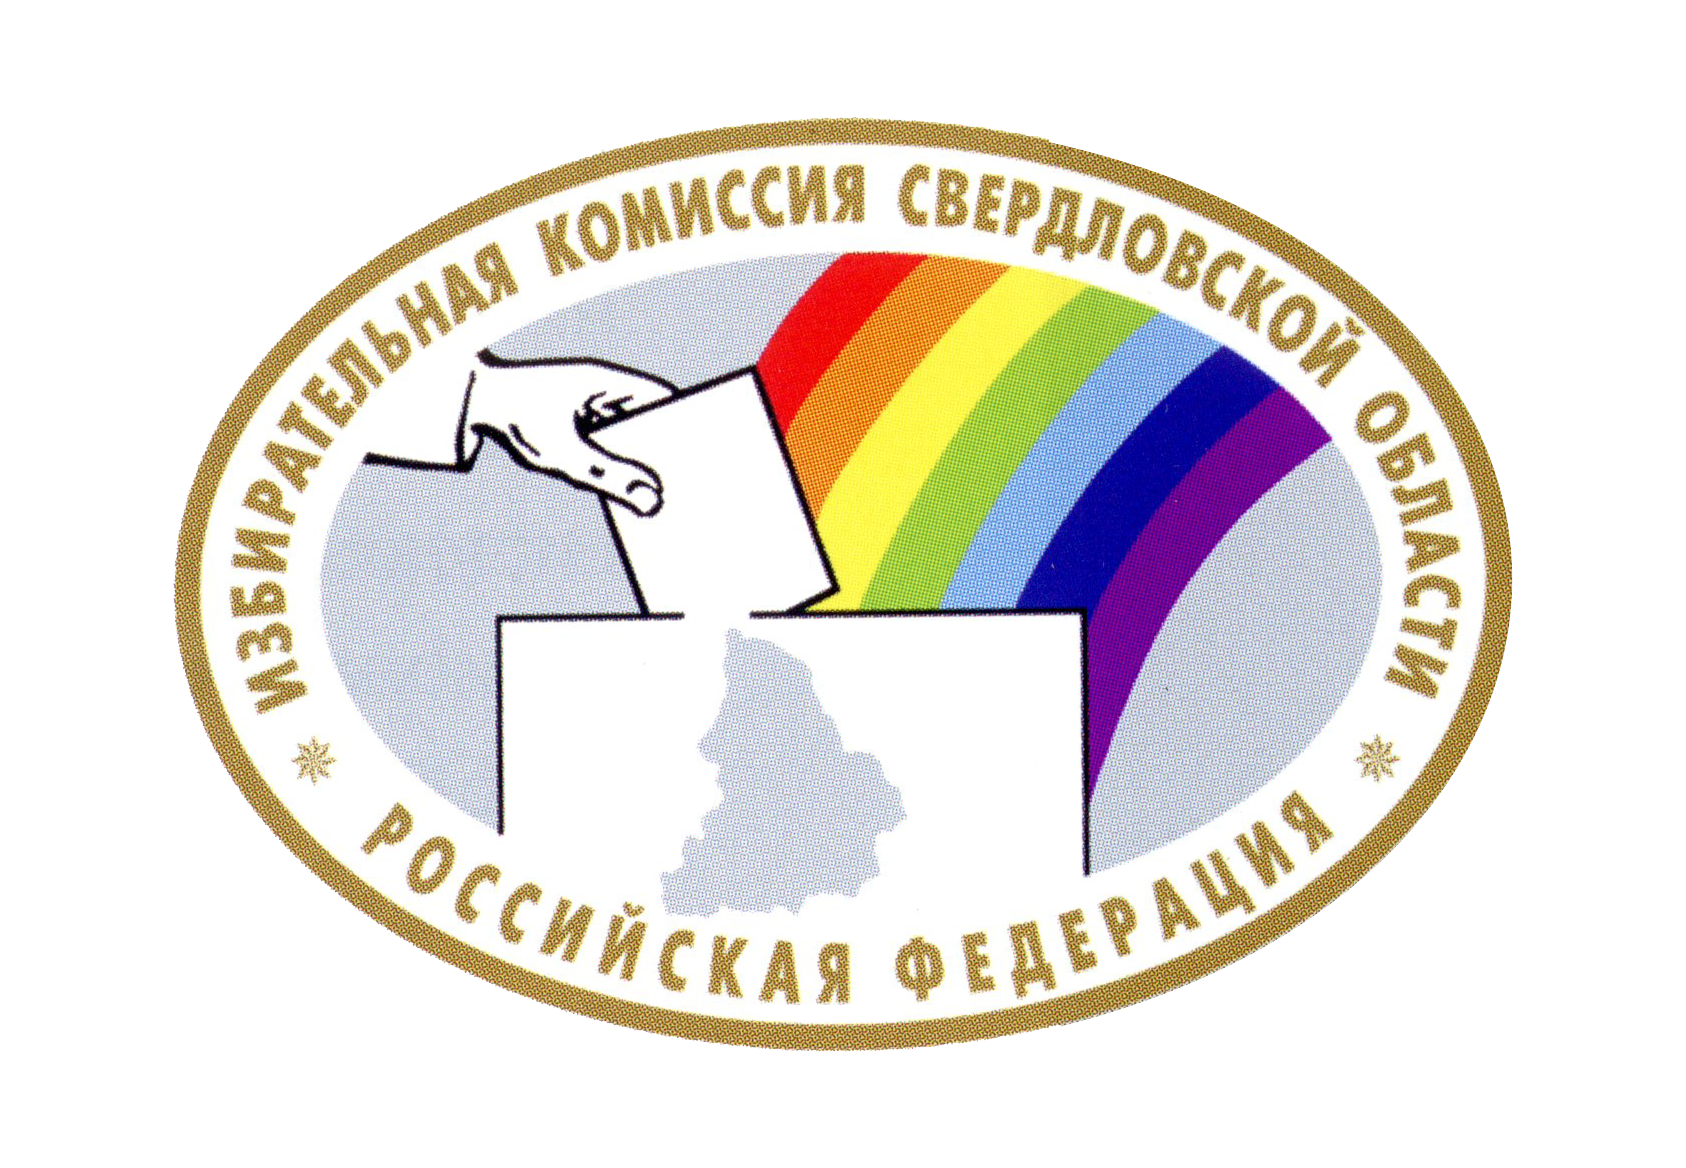 Эмблема избирательной комиссии Свердловской области, 1997 год.